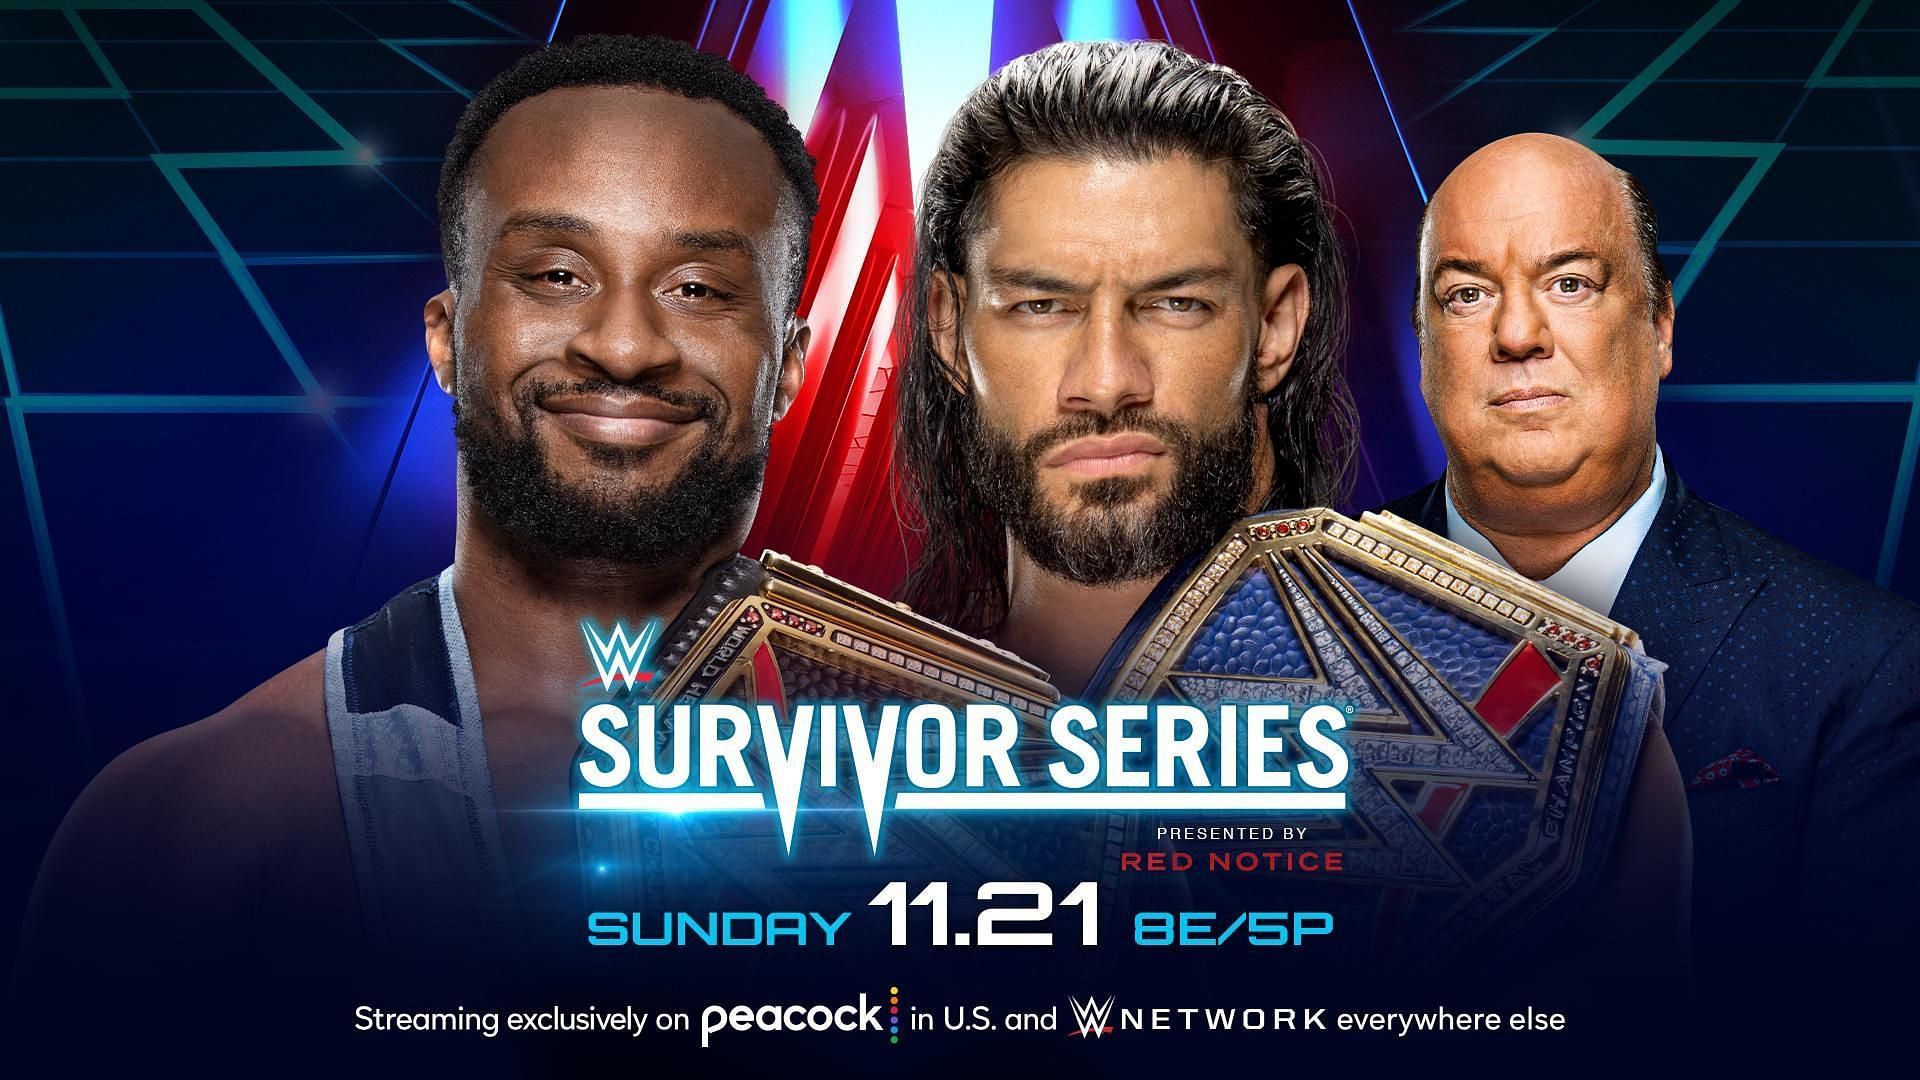 How to watch WWE Survivor Series 2021 online?